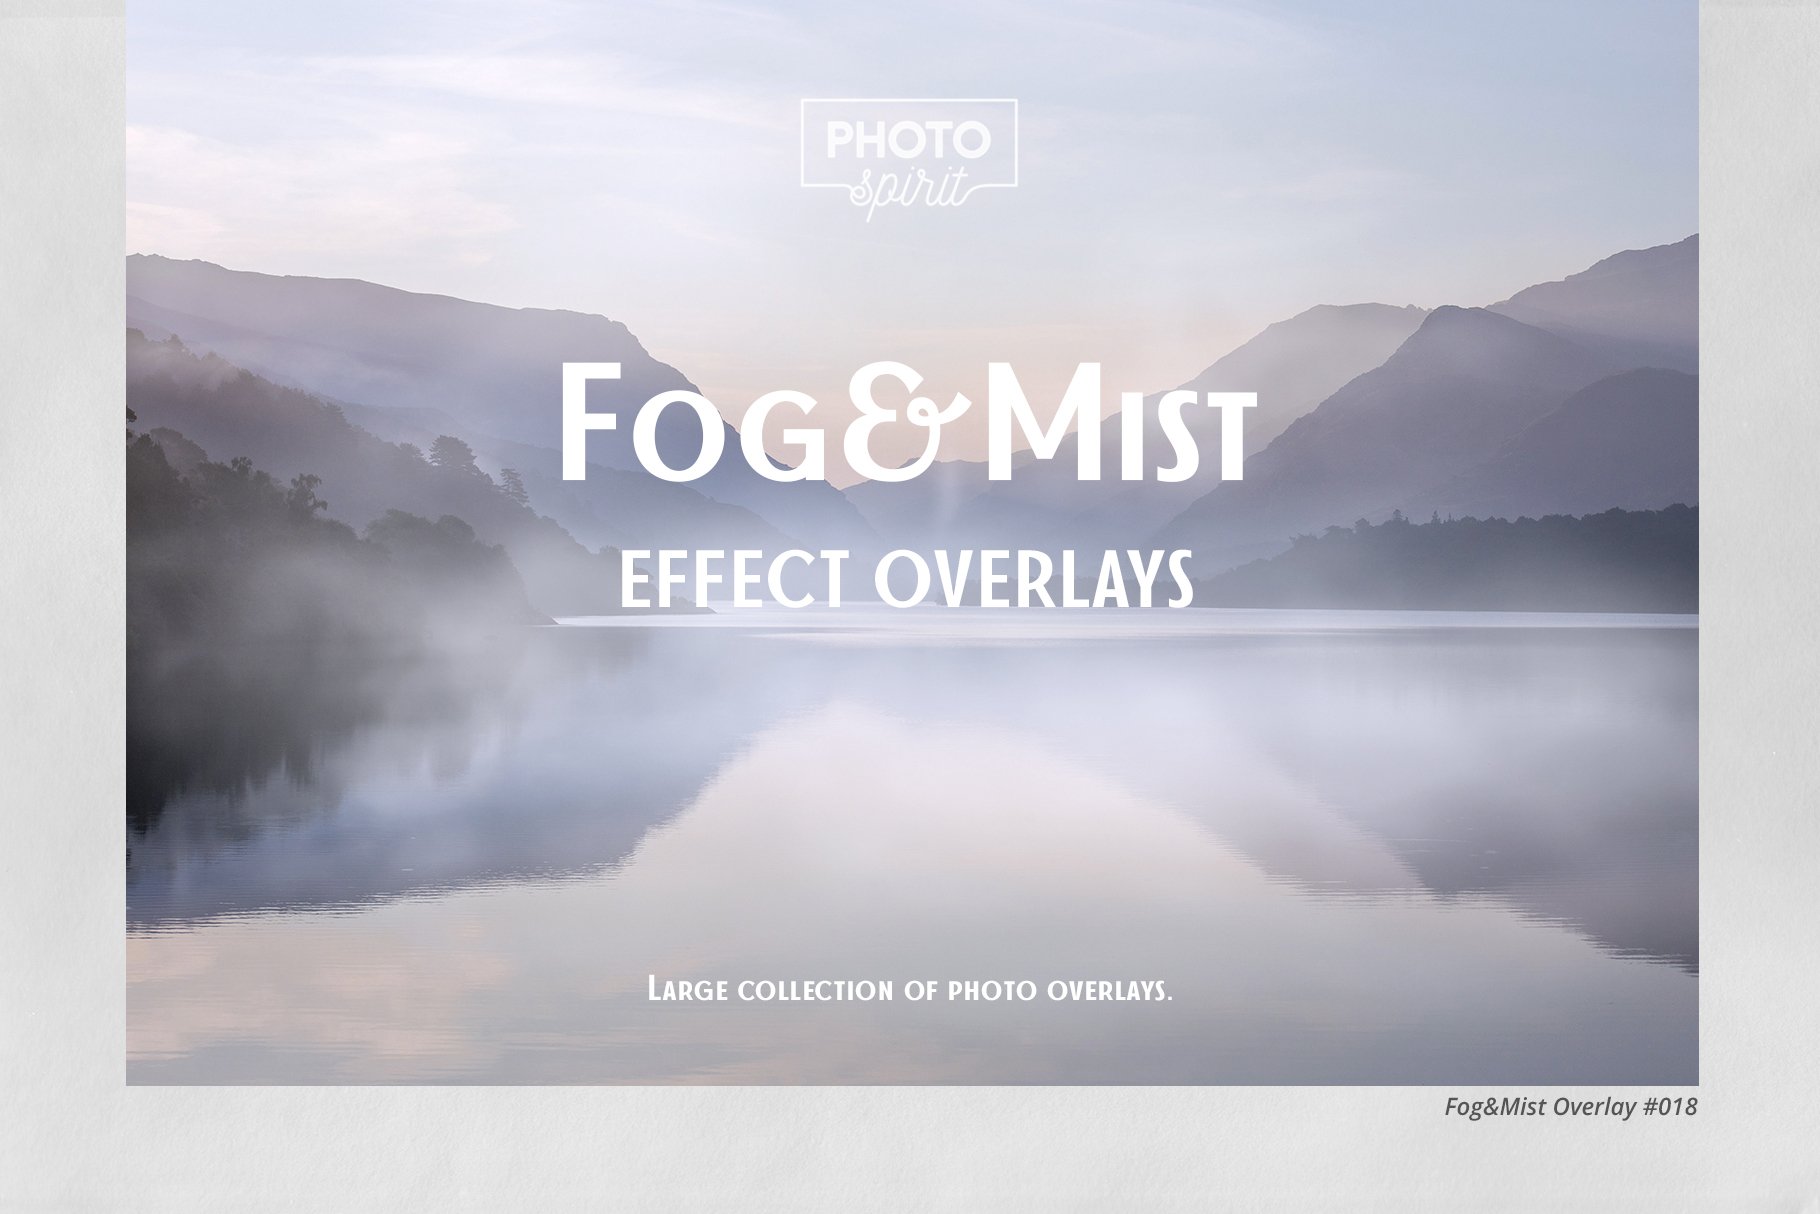 Fog&Mist Effect Overlayscover image.